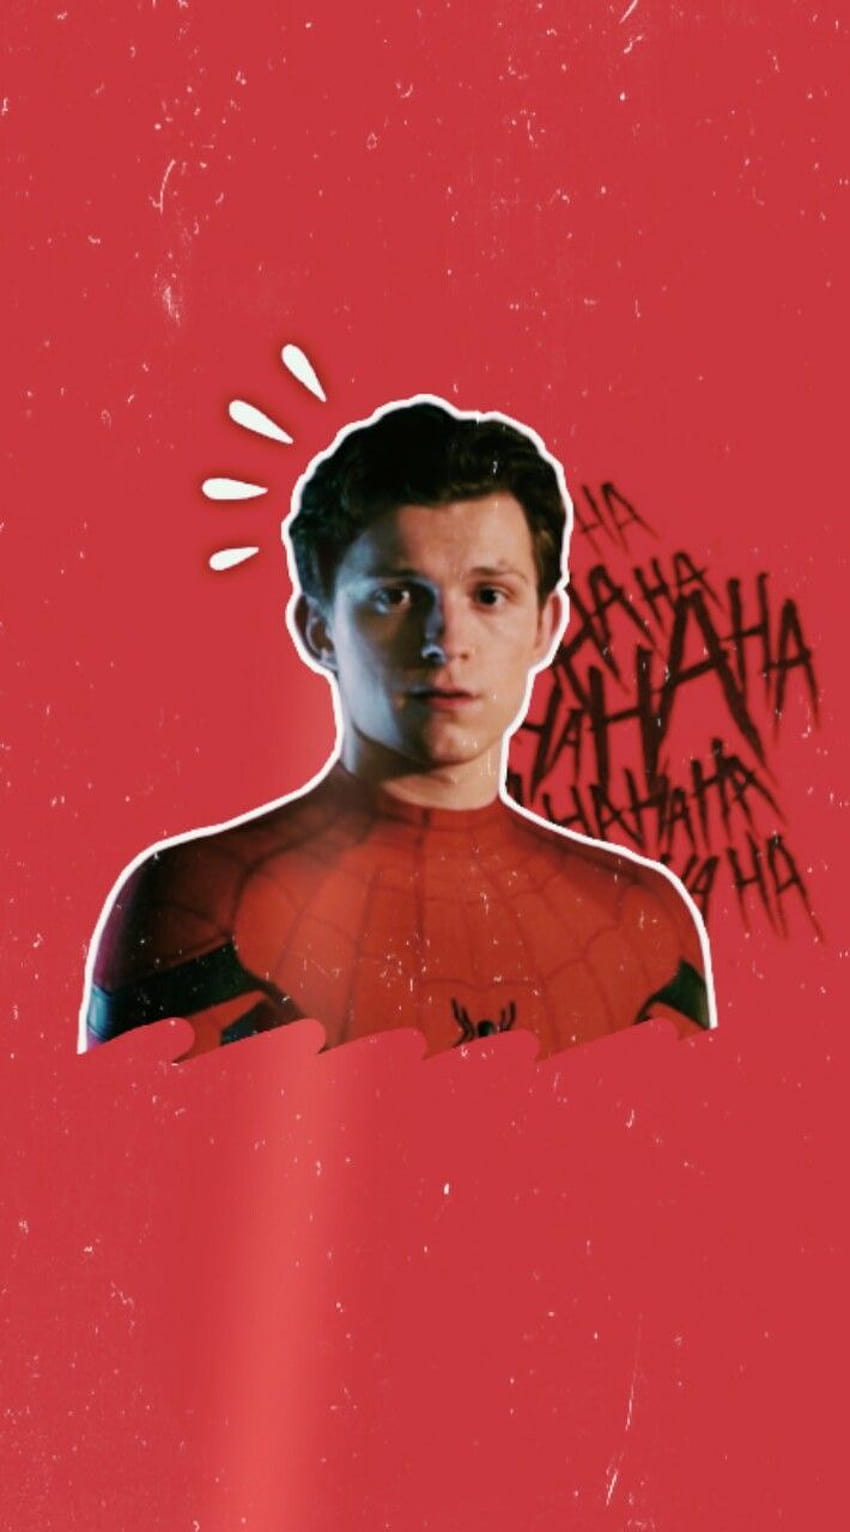 Spider man wallpaper for mobile - Marvel